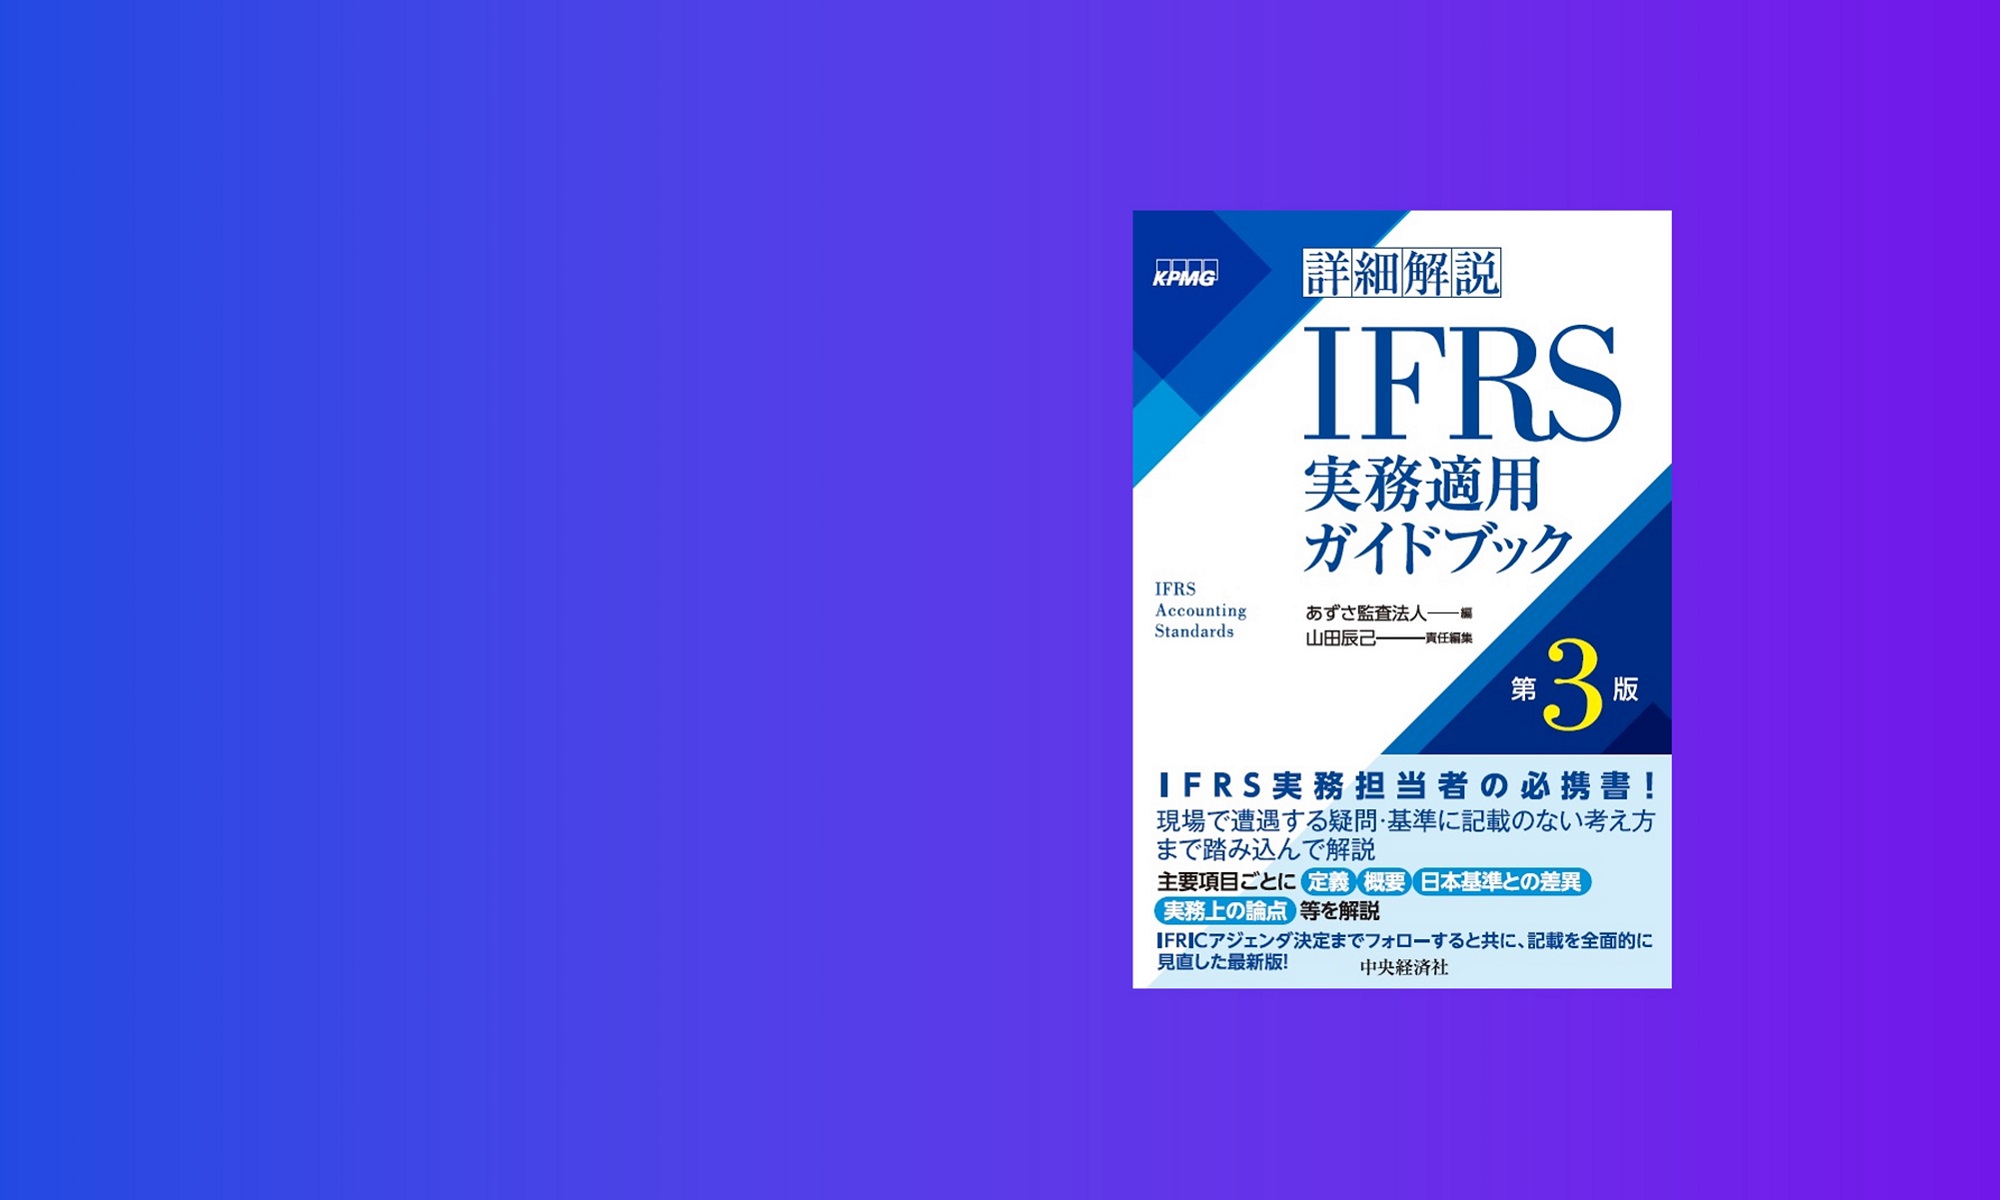 あずさ監査法人編集、書籍「詳細解説 IFRS実務適用ガイドブック（第3版 